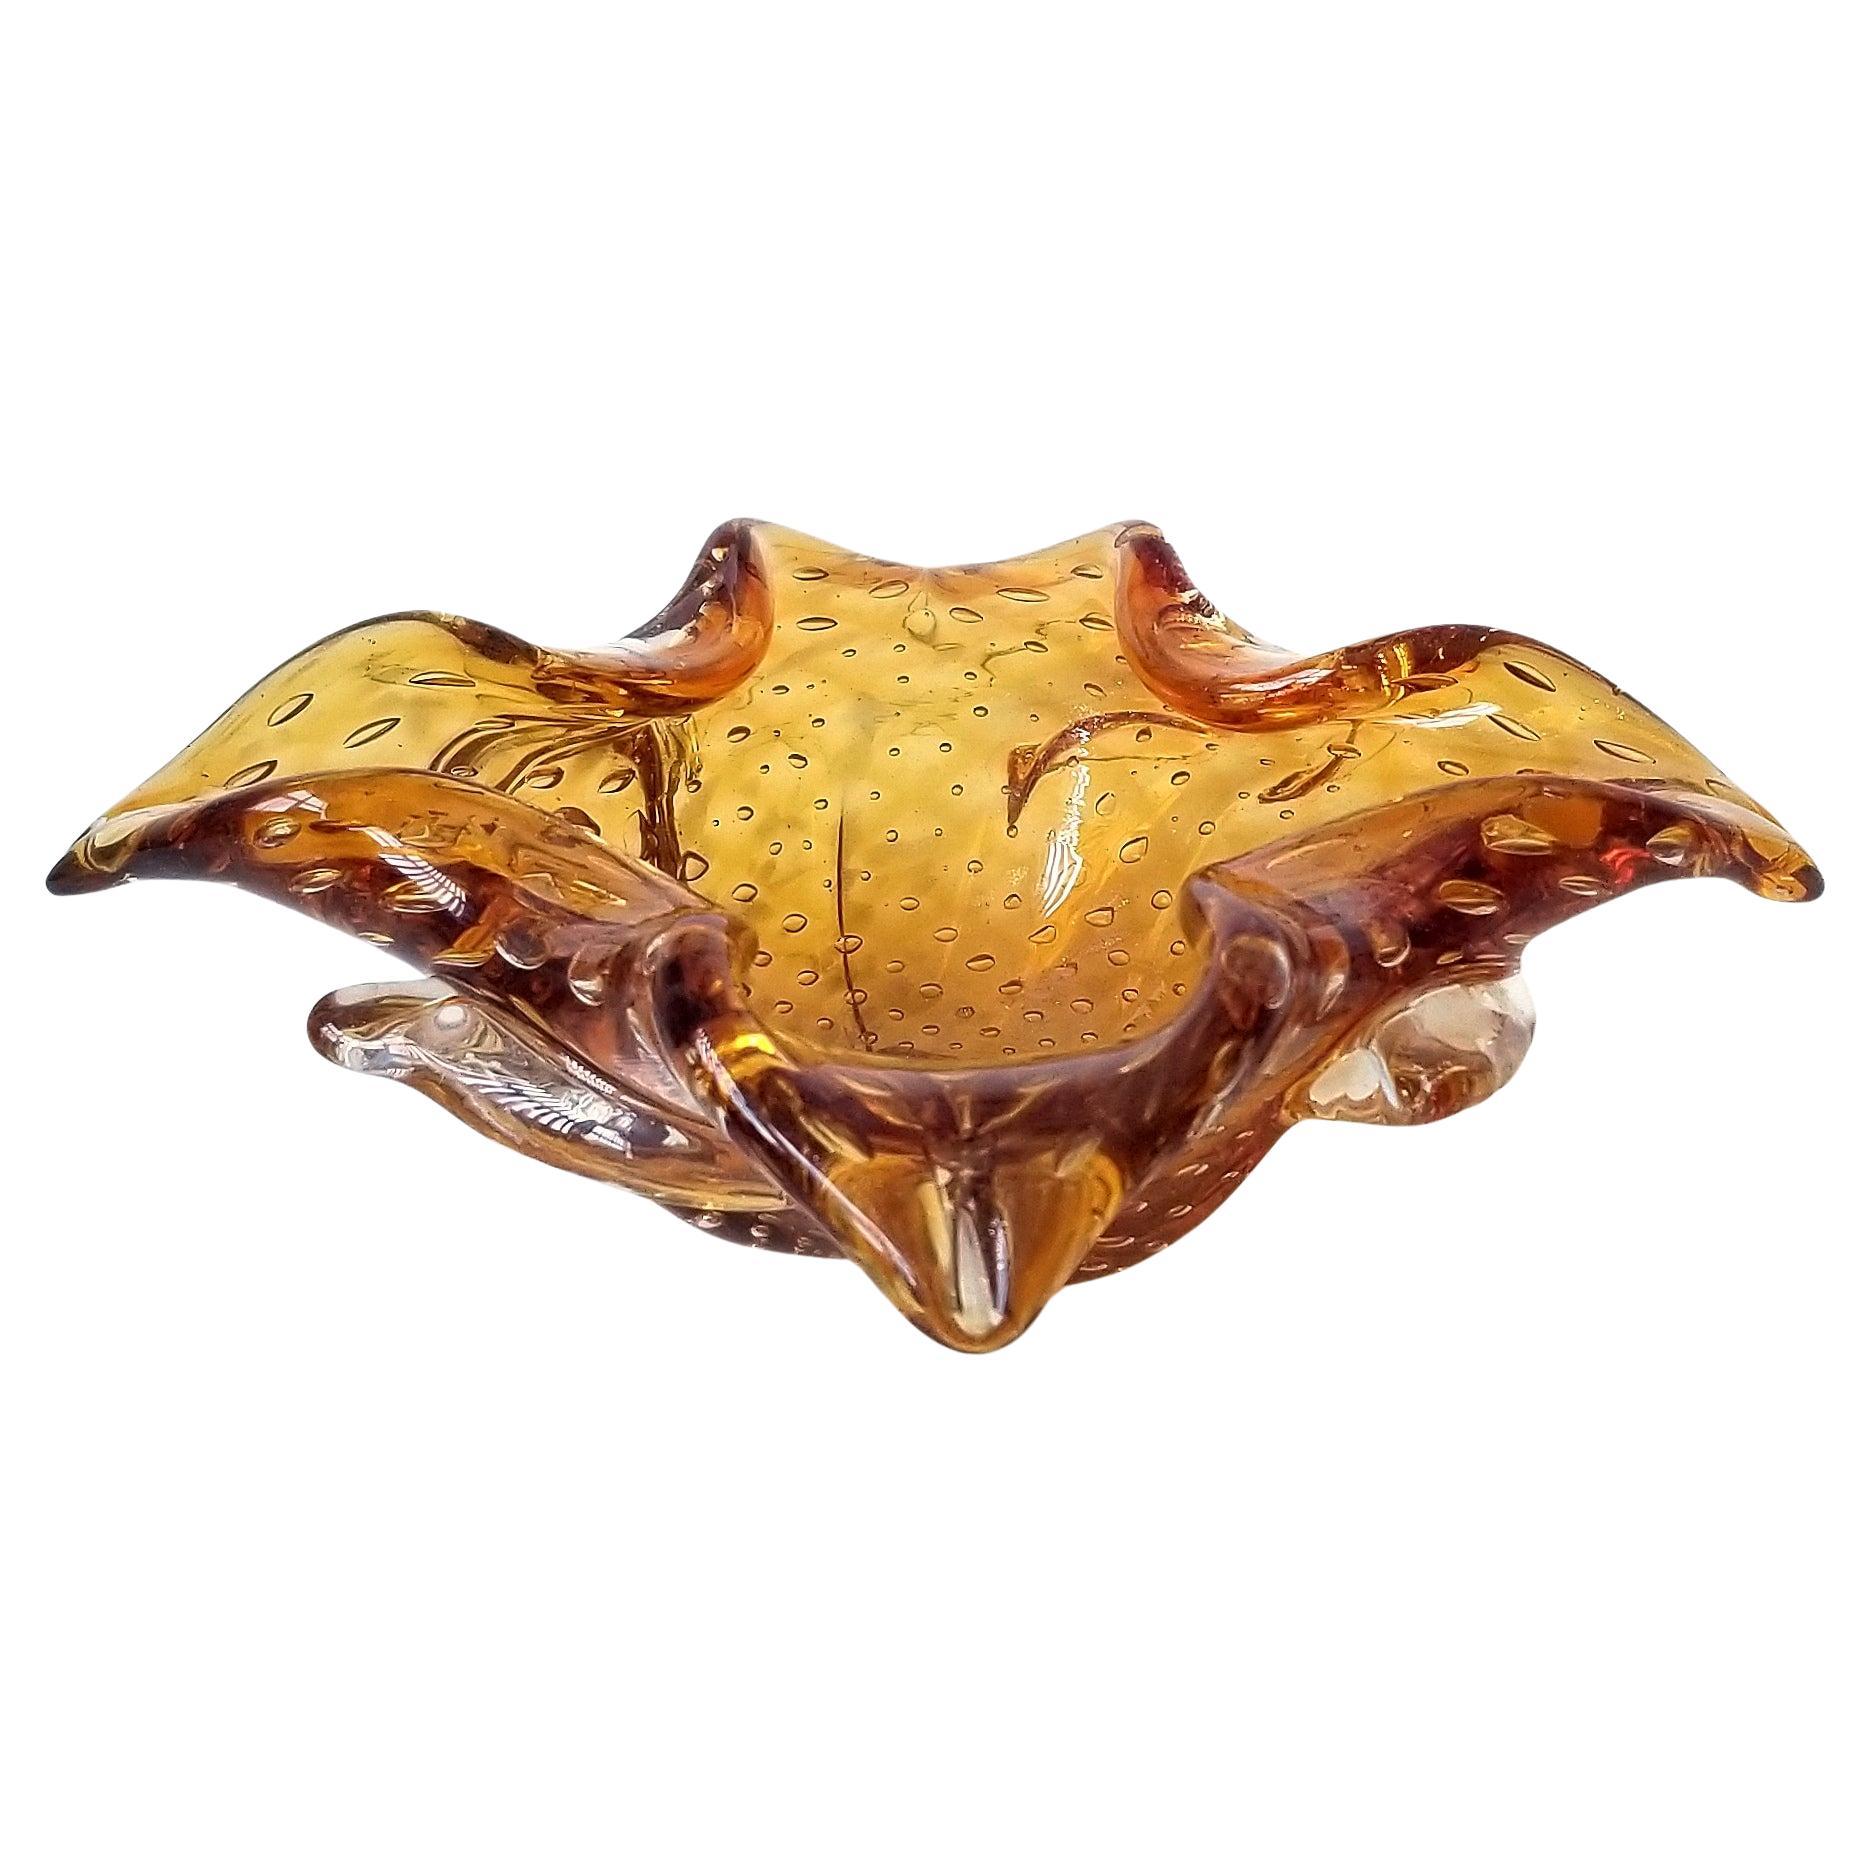 Vintage Murano jaune ambre et or bol décoratif, vide-poche ou cendrier à cigares en verre. Verre vénitien soufflé à la main avec un design de bulles contrôlées (bullicante), une discrète aventurine dorée et une forme florale organique. Le